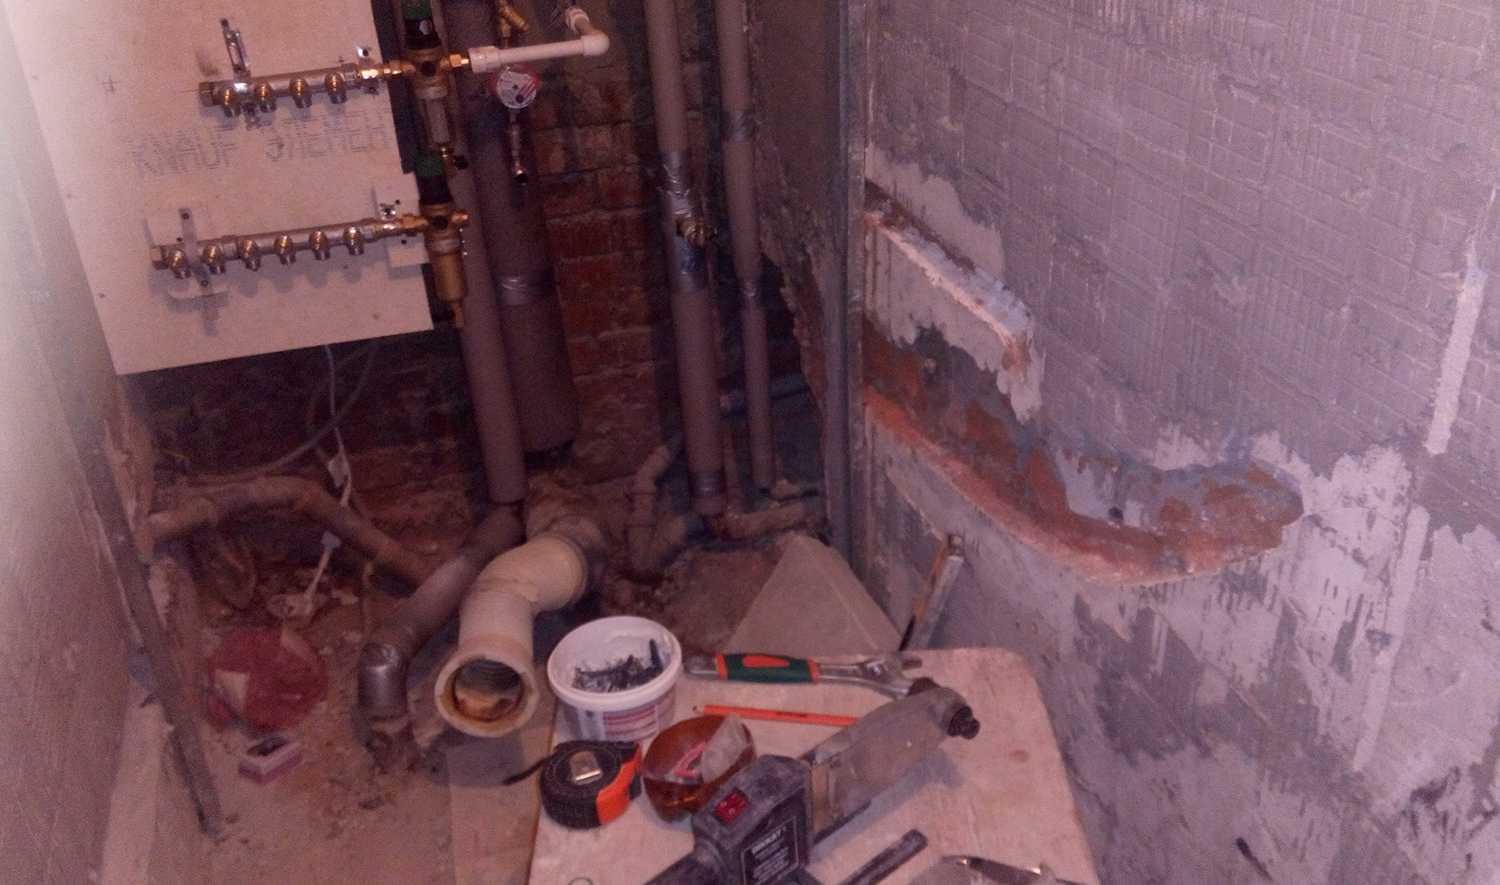 Последовательность ремонта в ванной комнате: план, демонтаж, монтаж и отделка